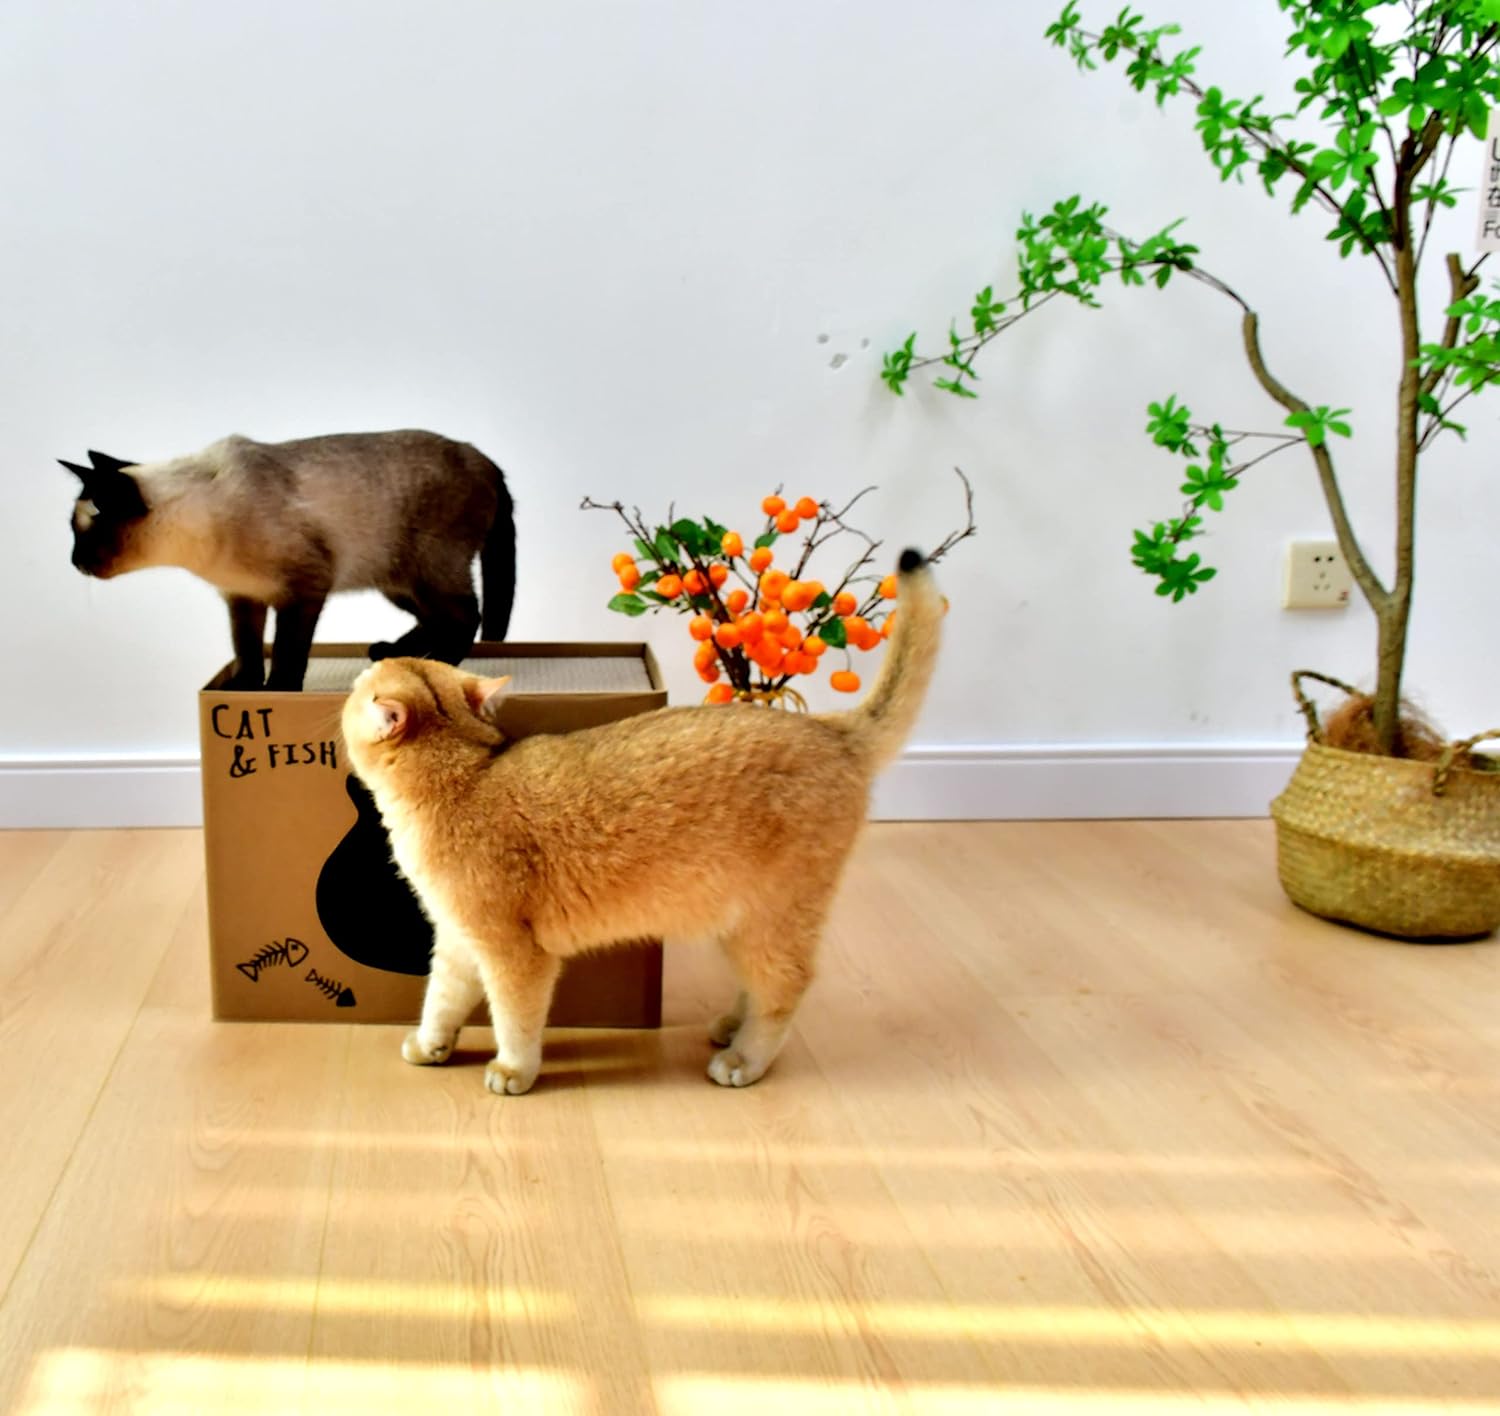 Casa plegable para gatos de dos pisos, caja de rascadores corrugados de doble